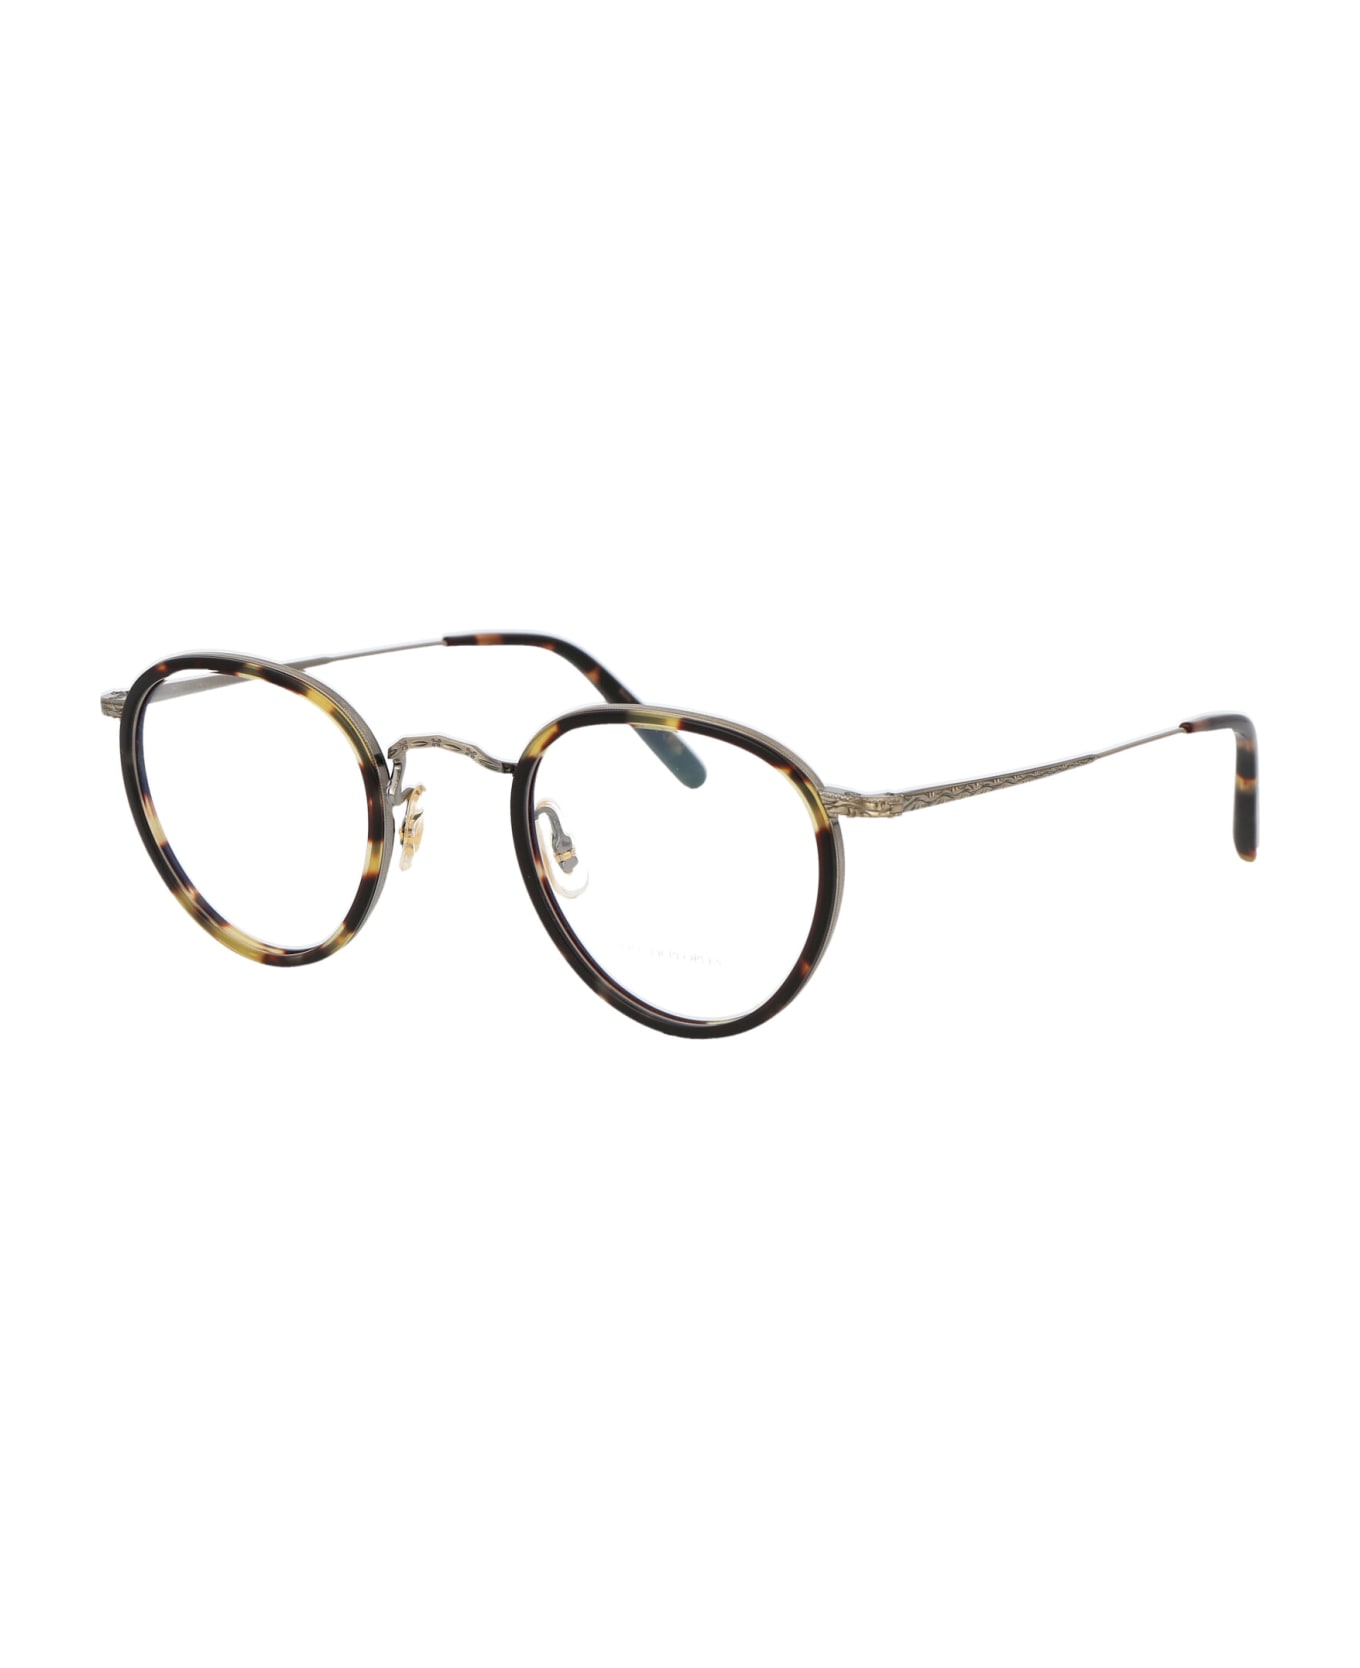 Oliver Peoples Mp-2 Glasses - 5039 Vintage DTB-Antique Gold アイウェア